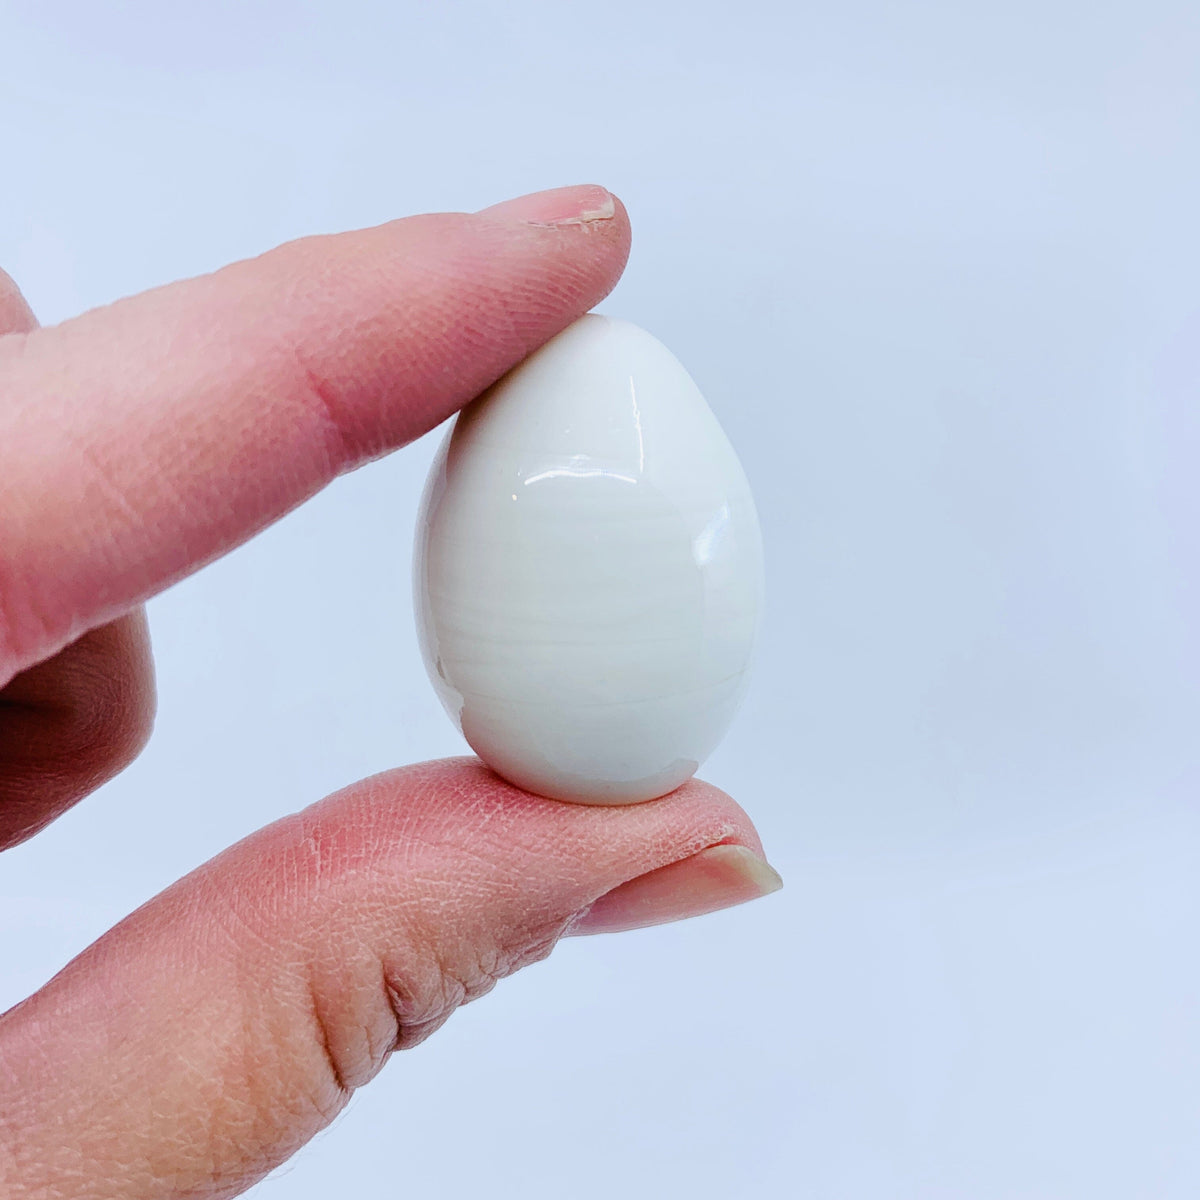 Kiwi Bird and Giant Egg Set Miniature - 